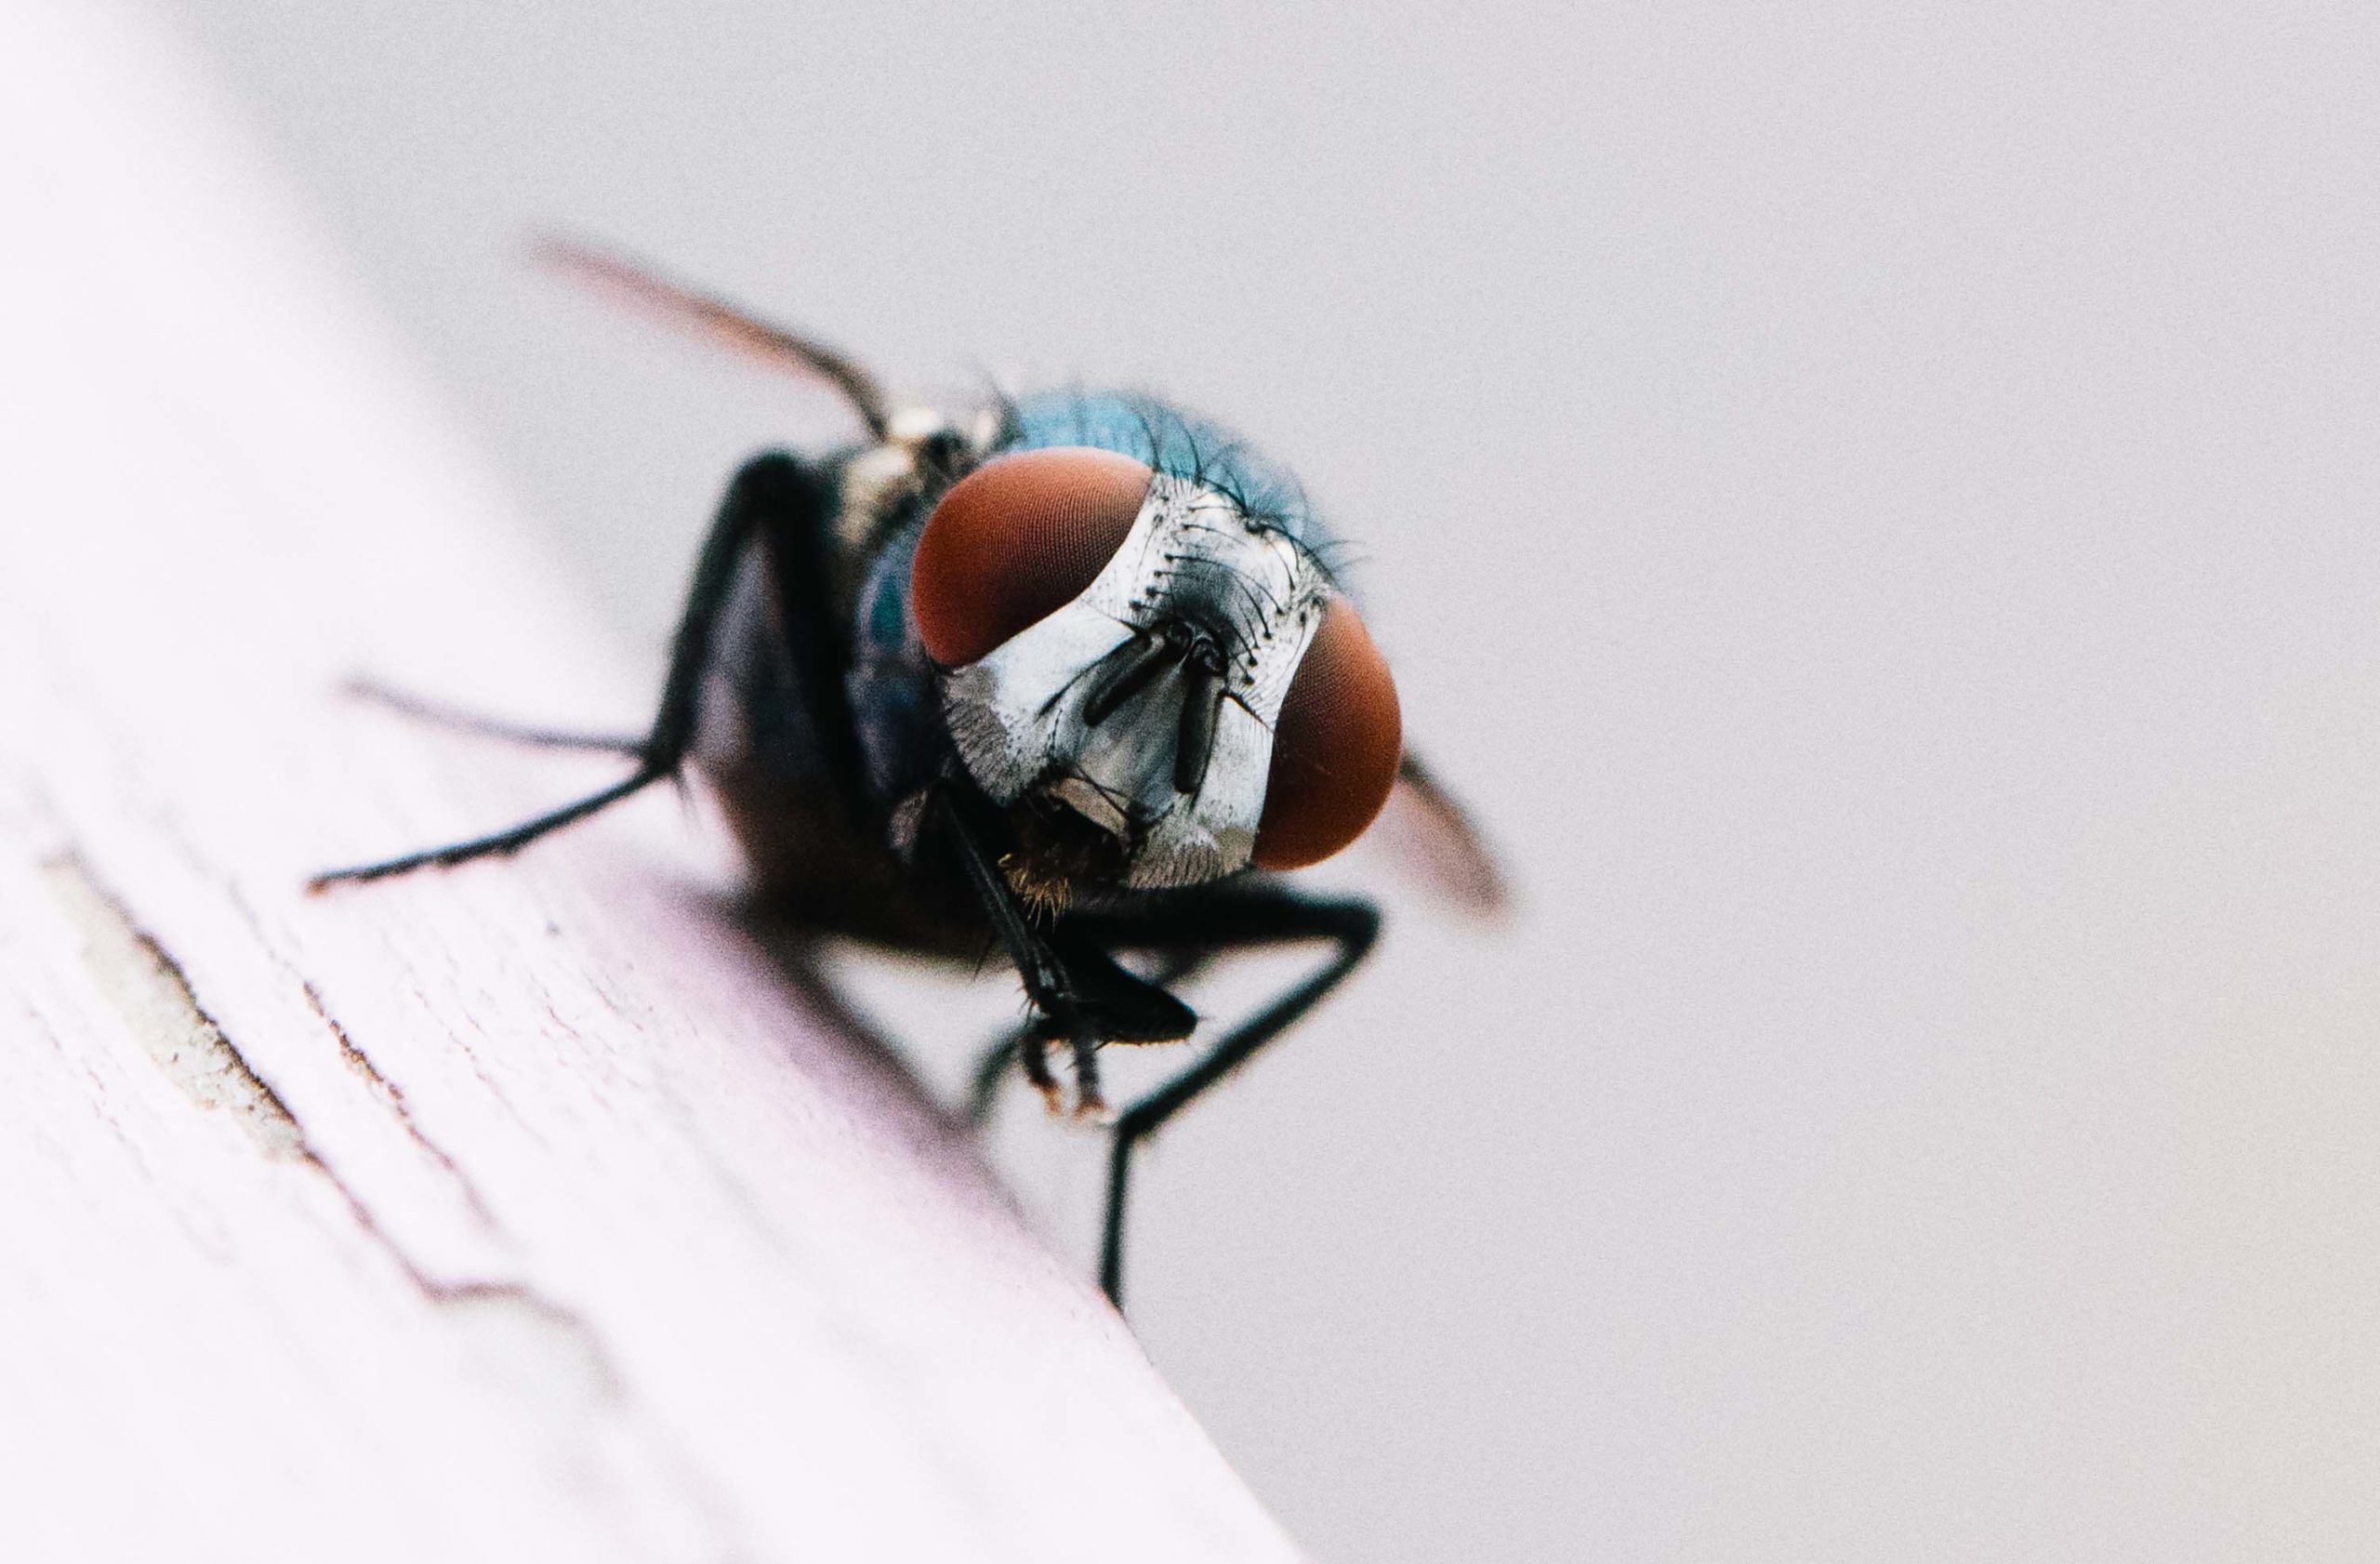 Fotografera insekter med makroobjektiv